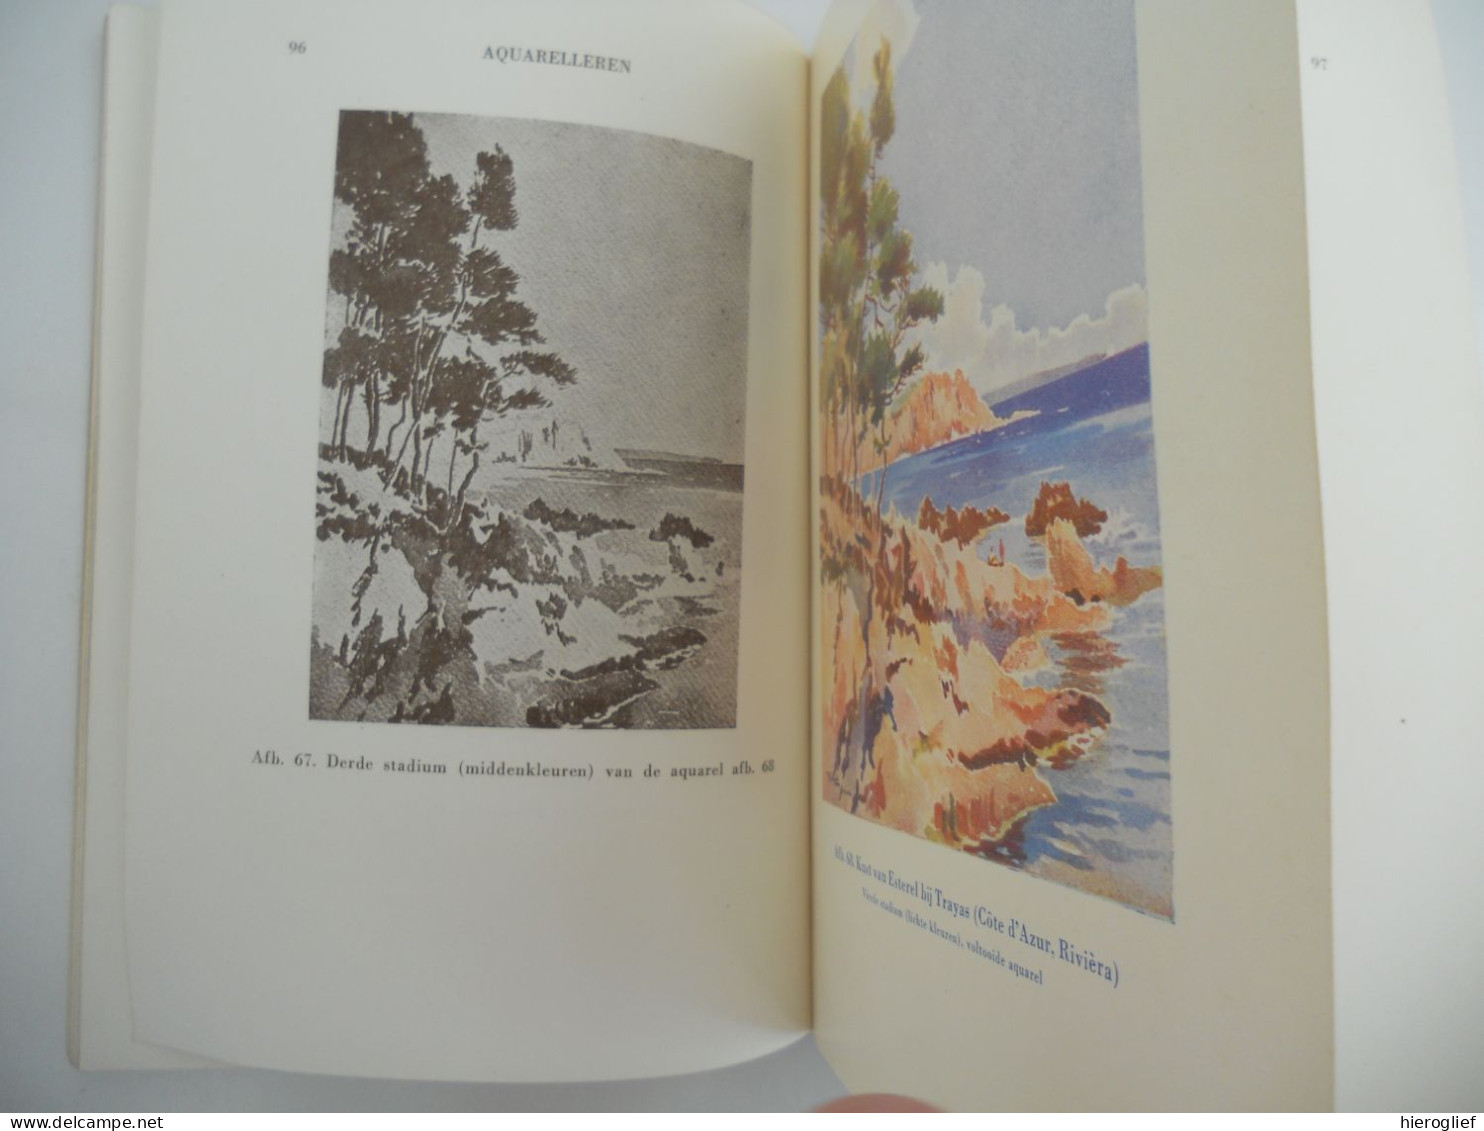 AQUARELLEREN in tien lessen met 69 afbeeldingen - Joël Thézard / Talens 1952 aquarel techniek materiaal schilderkunst